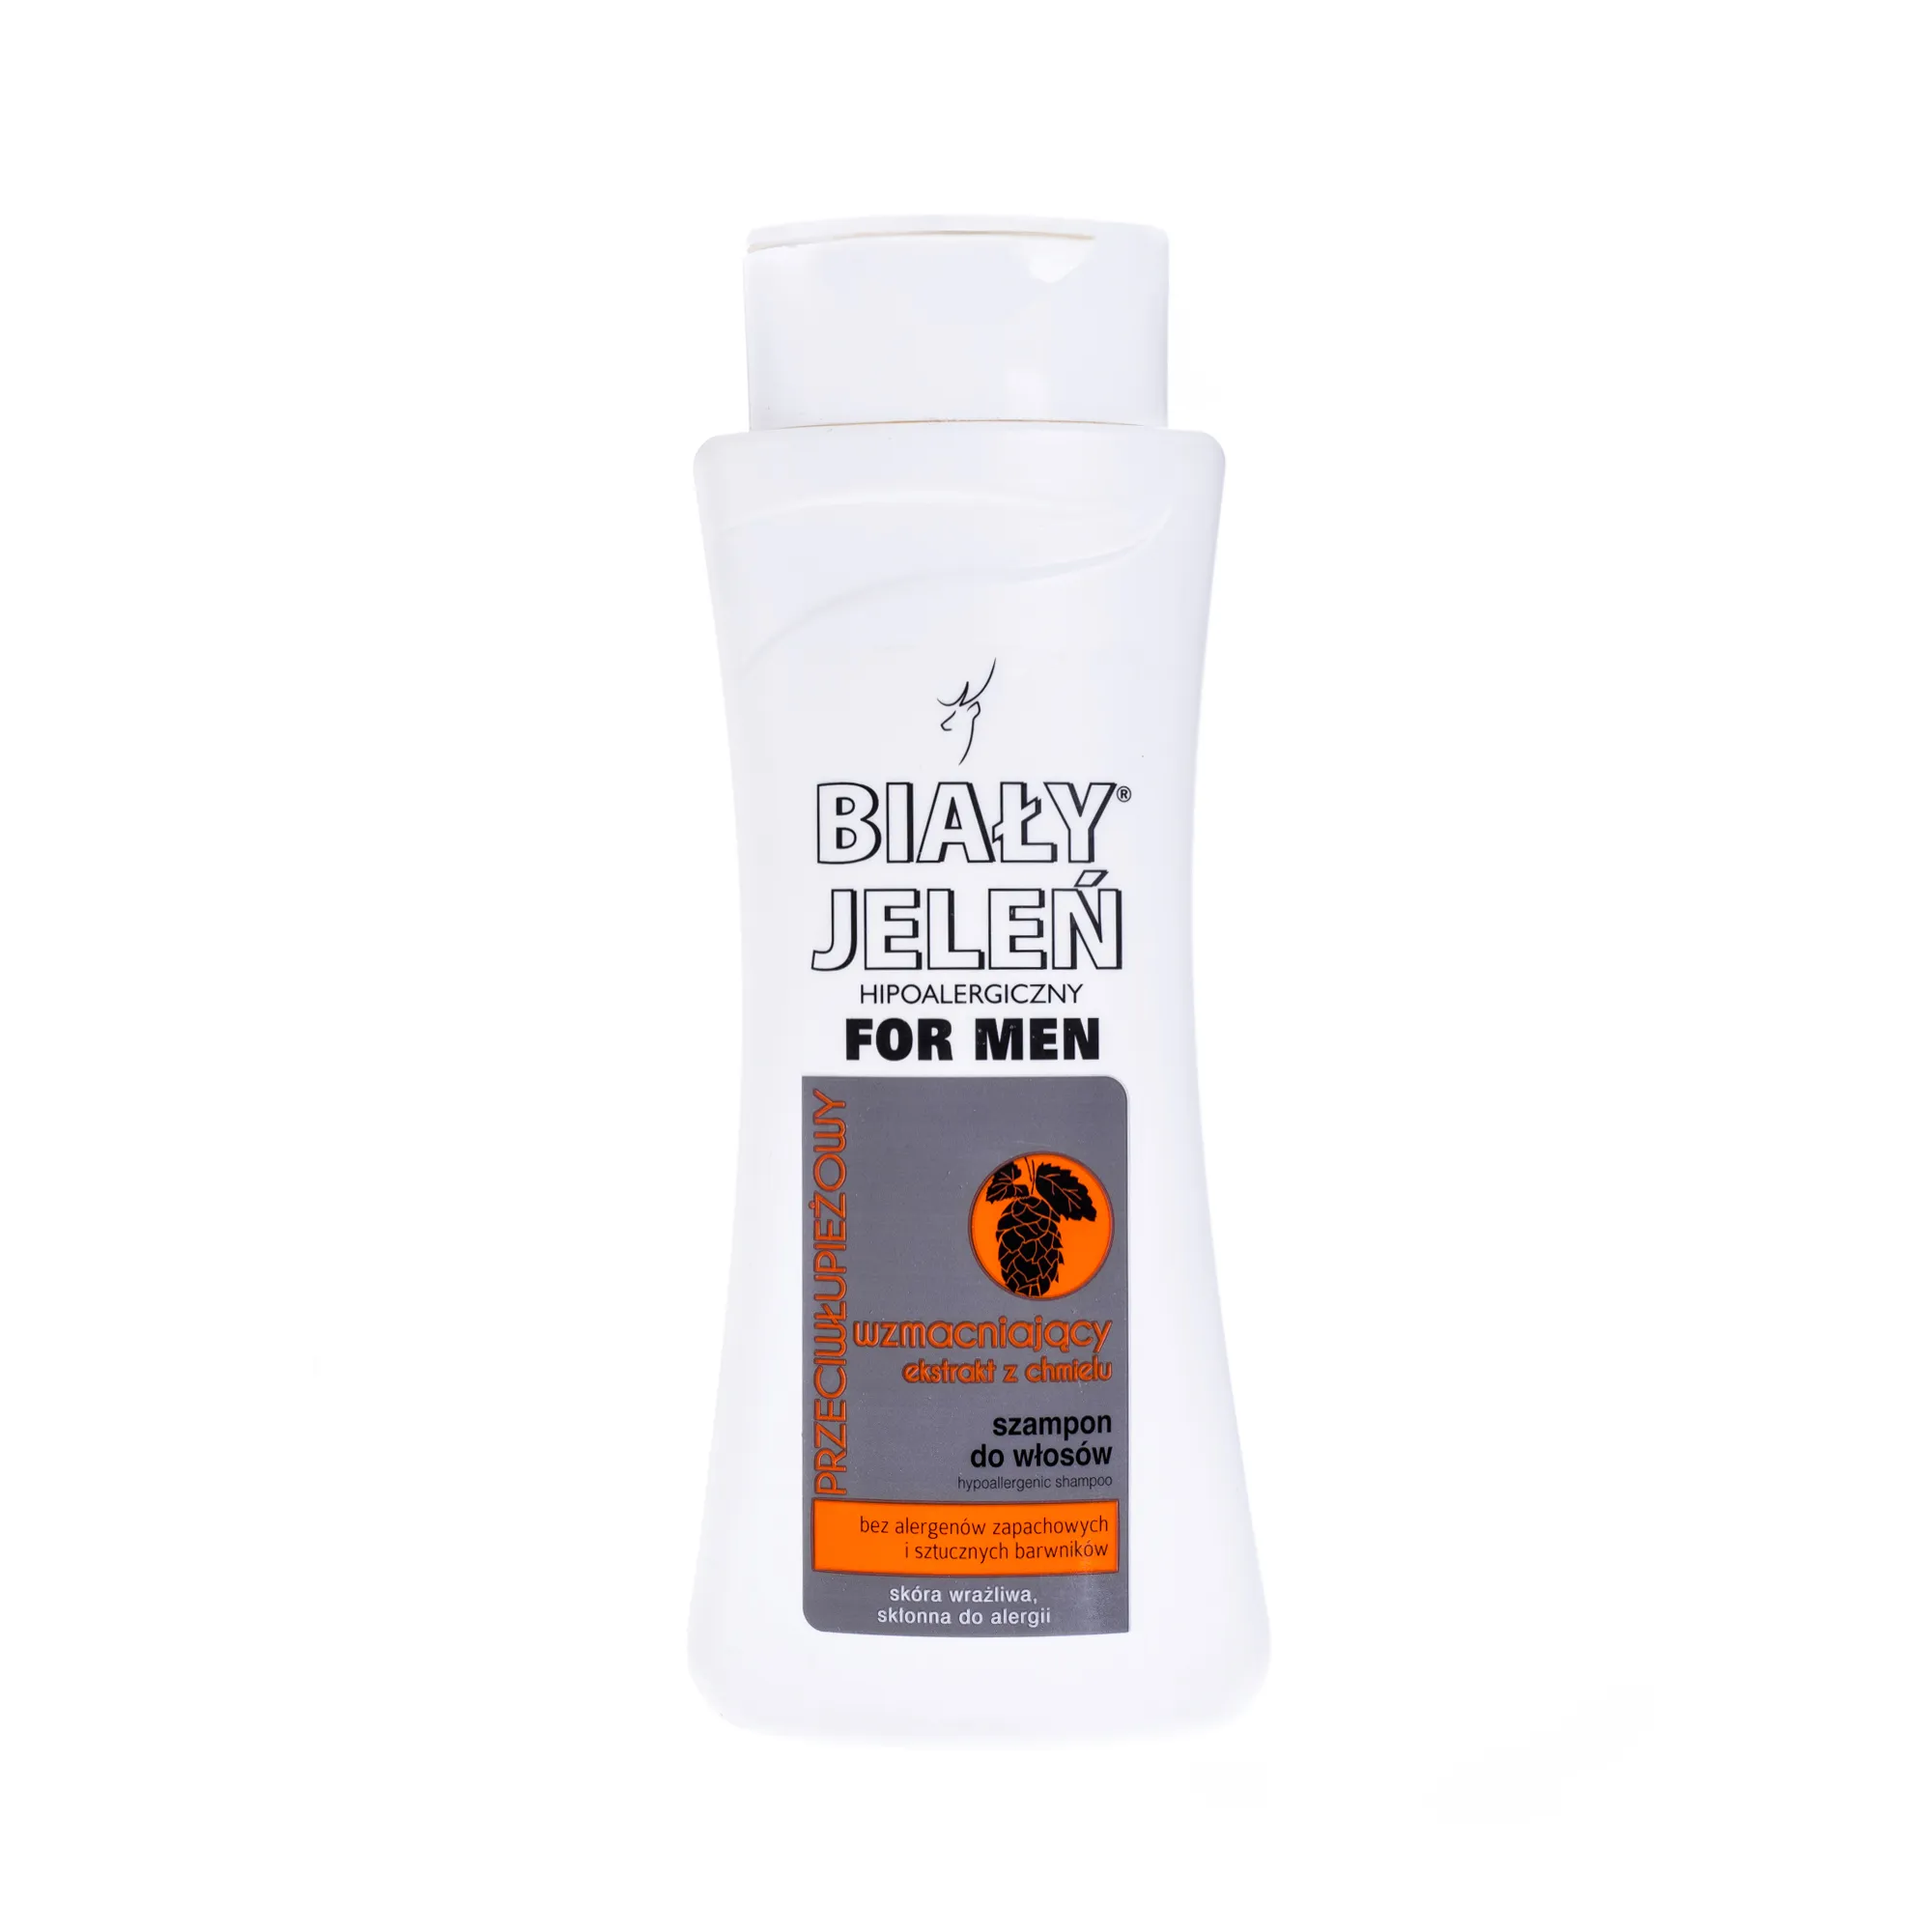 Biały Jeleń For Men, hipoalergiczny przeciwłupieżowy szampon do włosów, chmiel, 300 ml